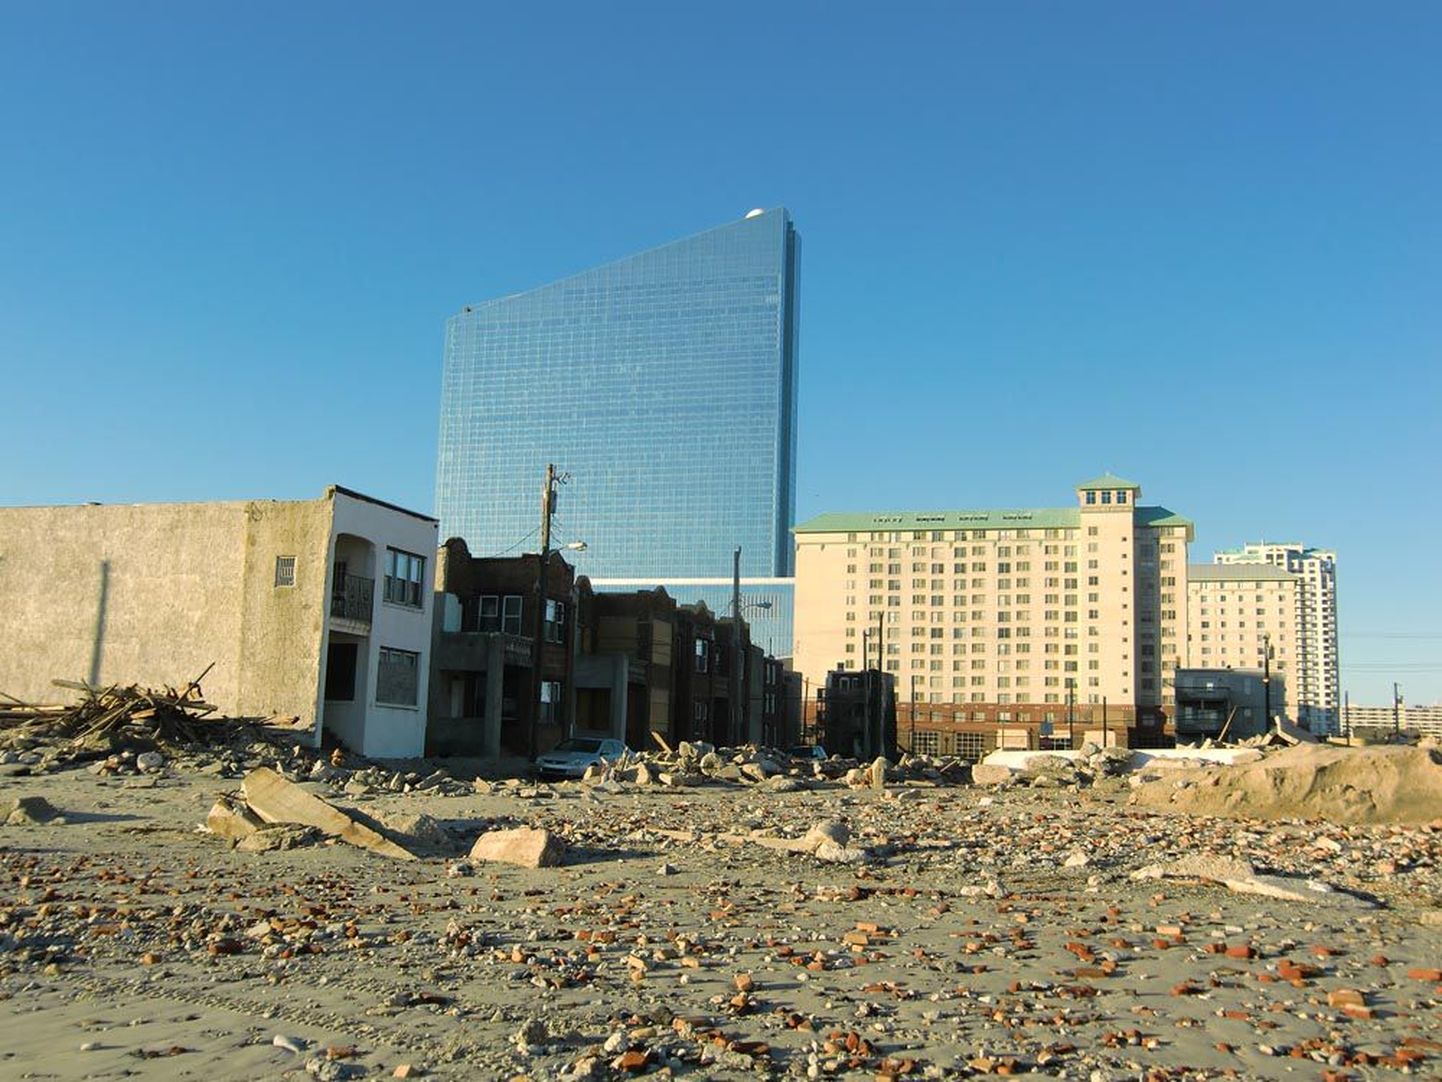 Sandy nn silmas asunud Atlantic Citys tekitas torm suurimaid kahjustusi linna ühes vaeseimas osas Abseconi lahe ääres, kus polnud selliseid kaitsevalle nagu kasiinode juures.